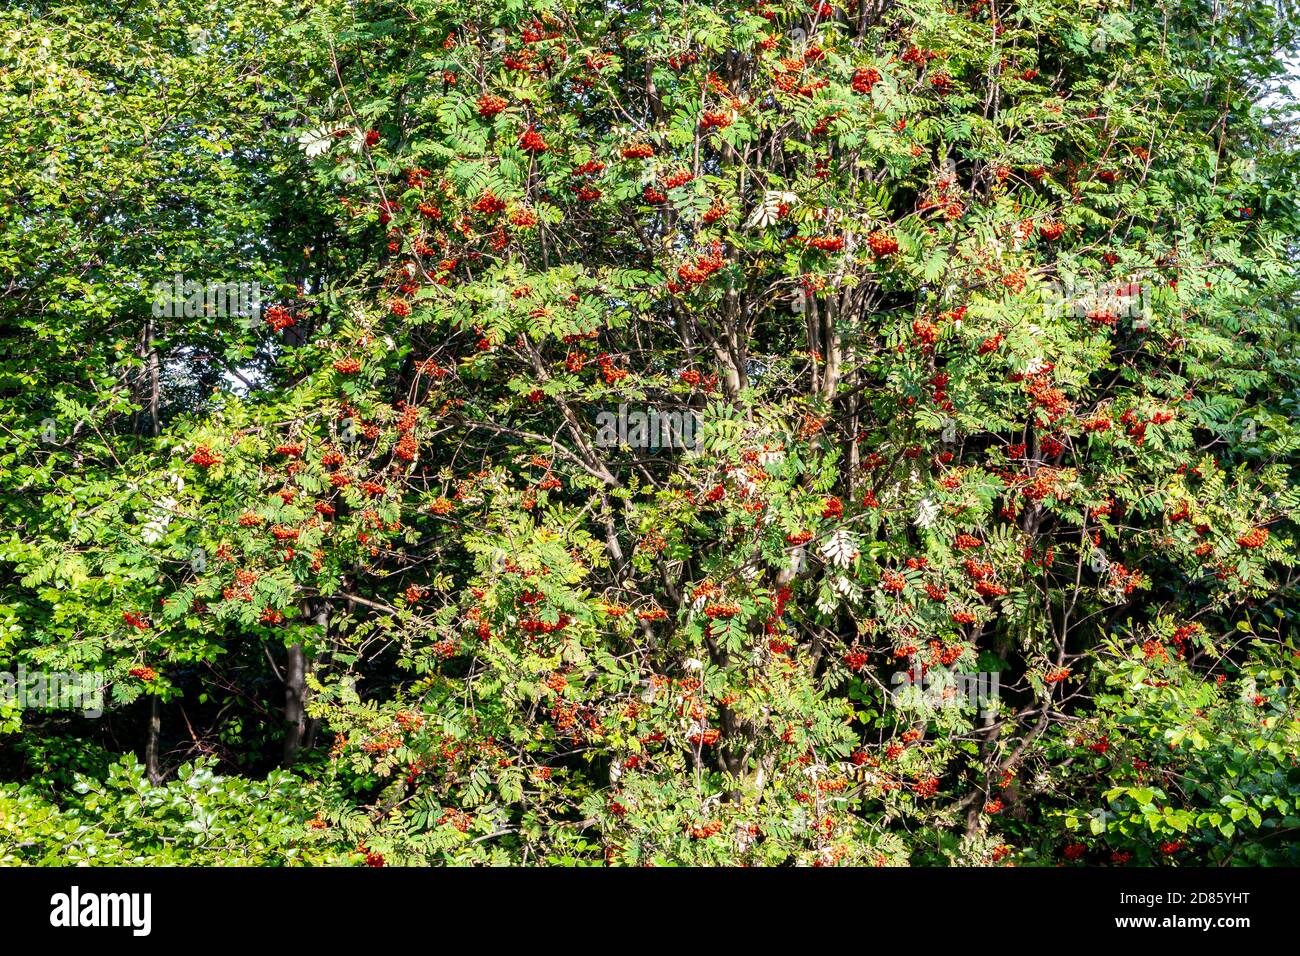 Gebirgsasche (Eberesche, Sorbus), Laubbaum der Rosenfamilie, mit zusammengesetzten Blättern und roten Beeren im Beskid-Gebirge, Polen. Stockfoto